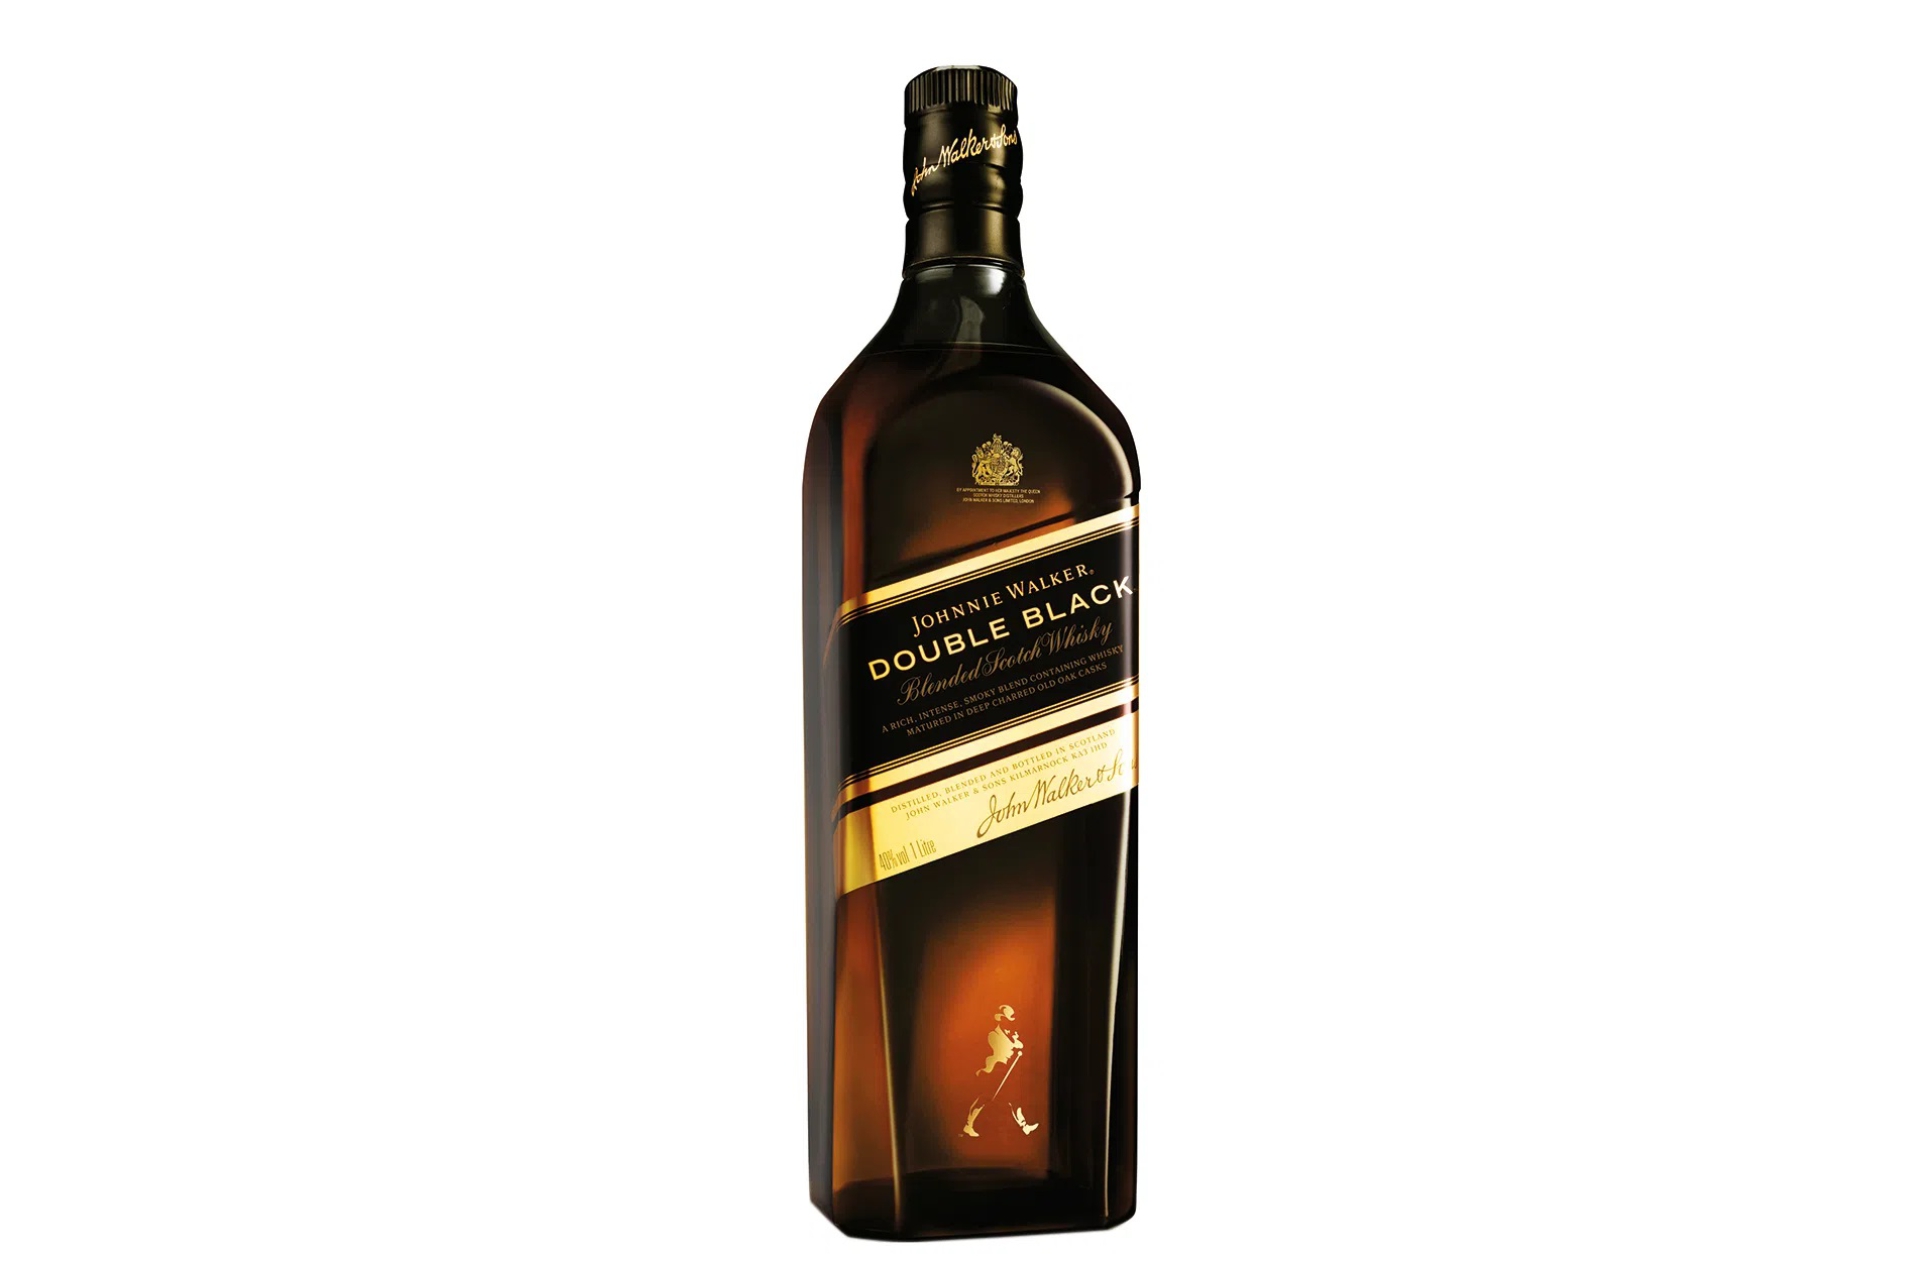 Whisky Black Label 3L + Suporte - Bebidas em Casa